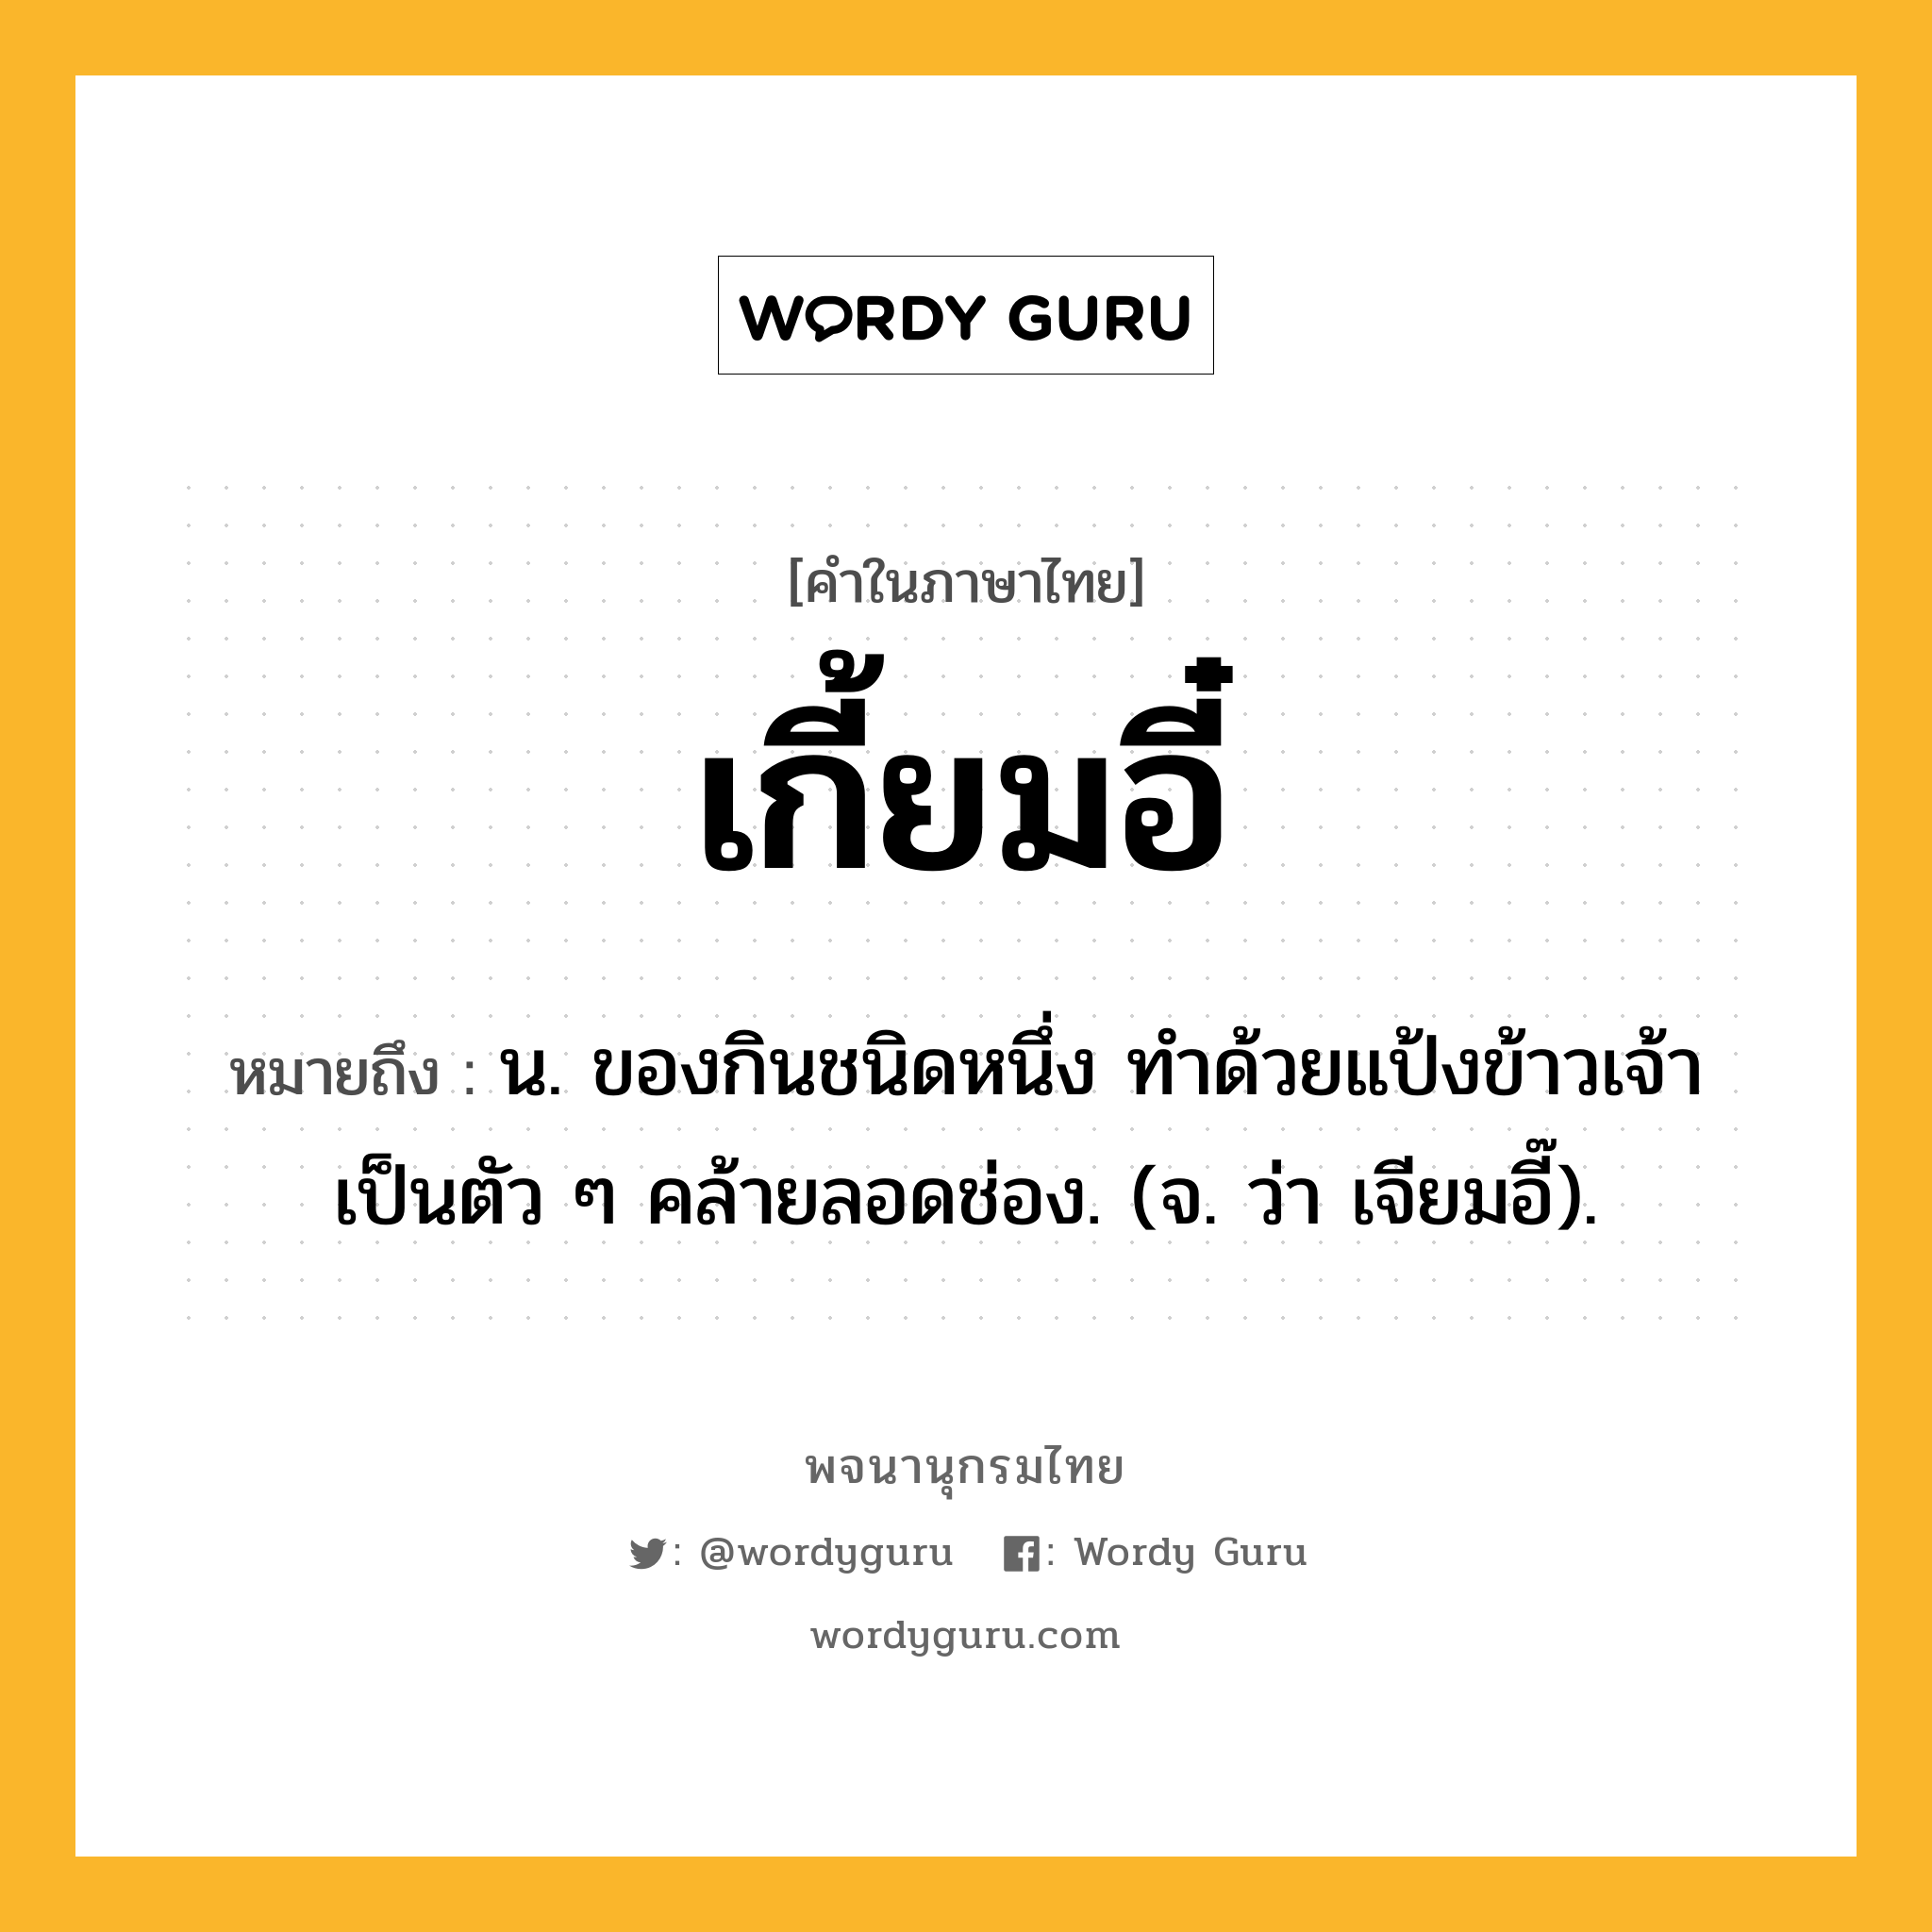 เกี้ยมอี๋ ความหมาย หมายถึงอะไร?, คำในภาษาไทย เกี้ยมอี๋ หมายถึง น. ของกินชนิดหนึ่ง ทําด้วยแป้งข้าวเจ้า เป็นตัว ๆ คล้ายลอดช่อง. (จ. ว่า เจียมอี๊).